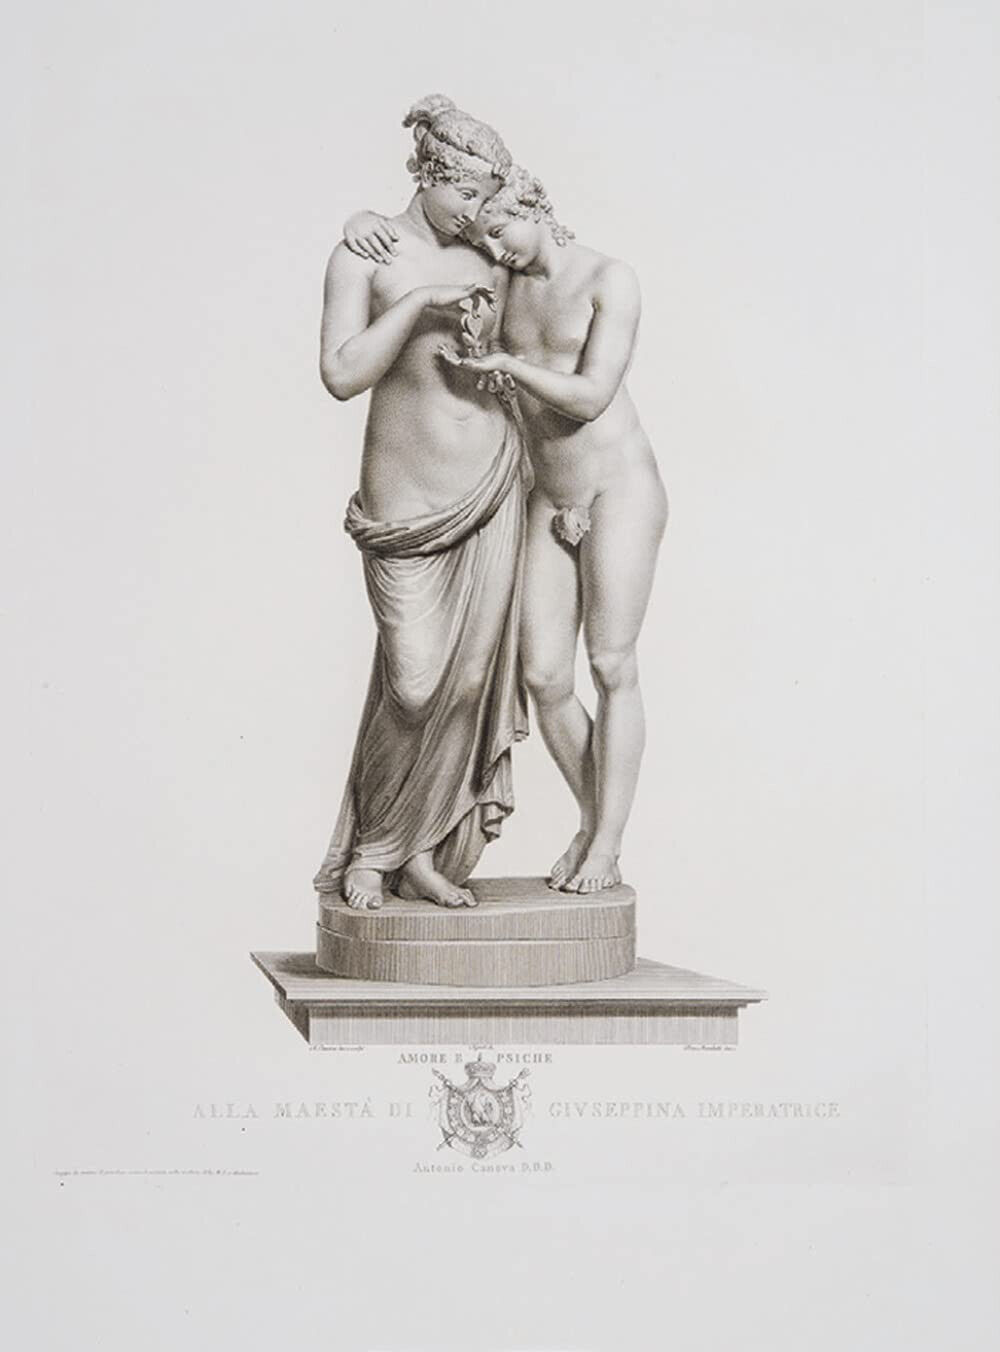 Stampe delle opere scolpite da Antonio Canova Roma MDCCCXVII (1817) - 2022 libro usato